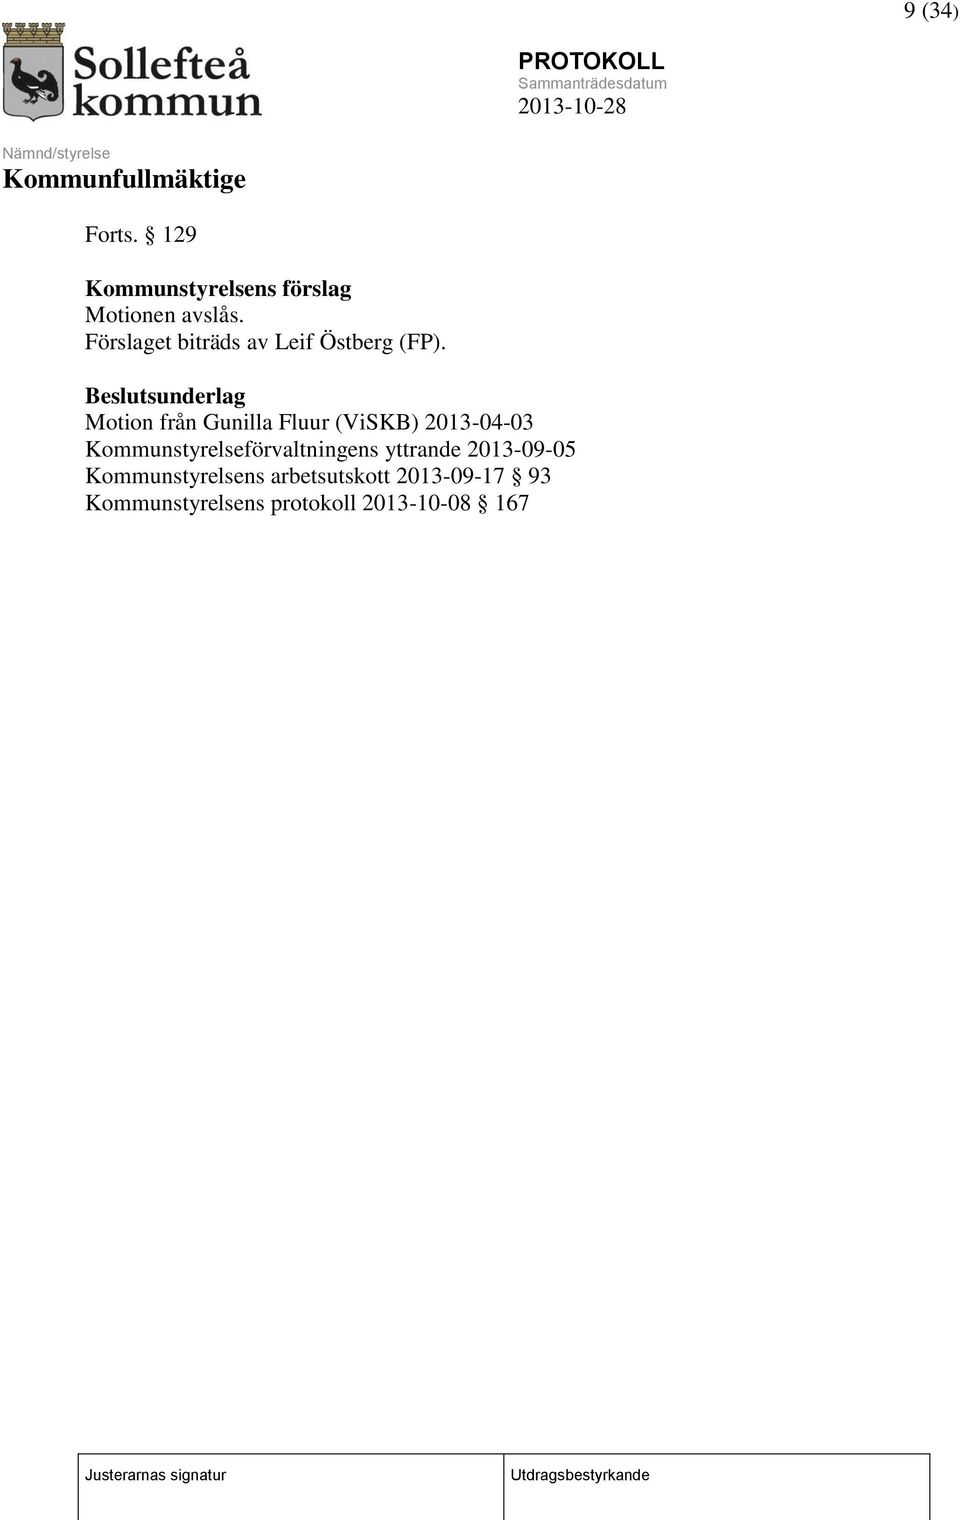 Beslutsunderlag Motion från Gunilla Fluur (ViSKB) 2013-04-03